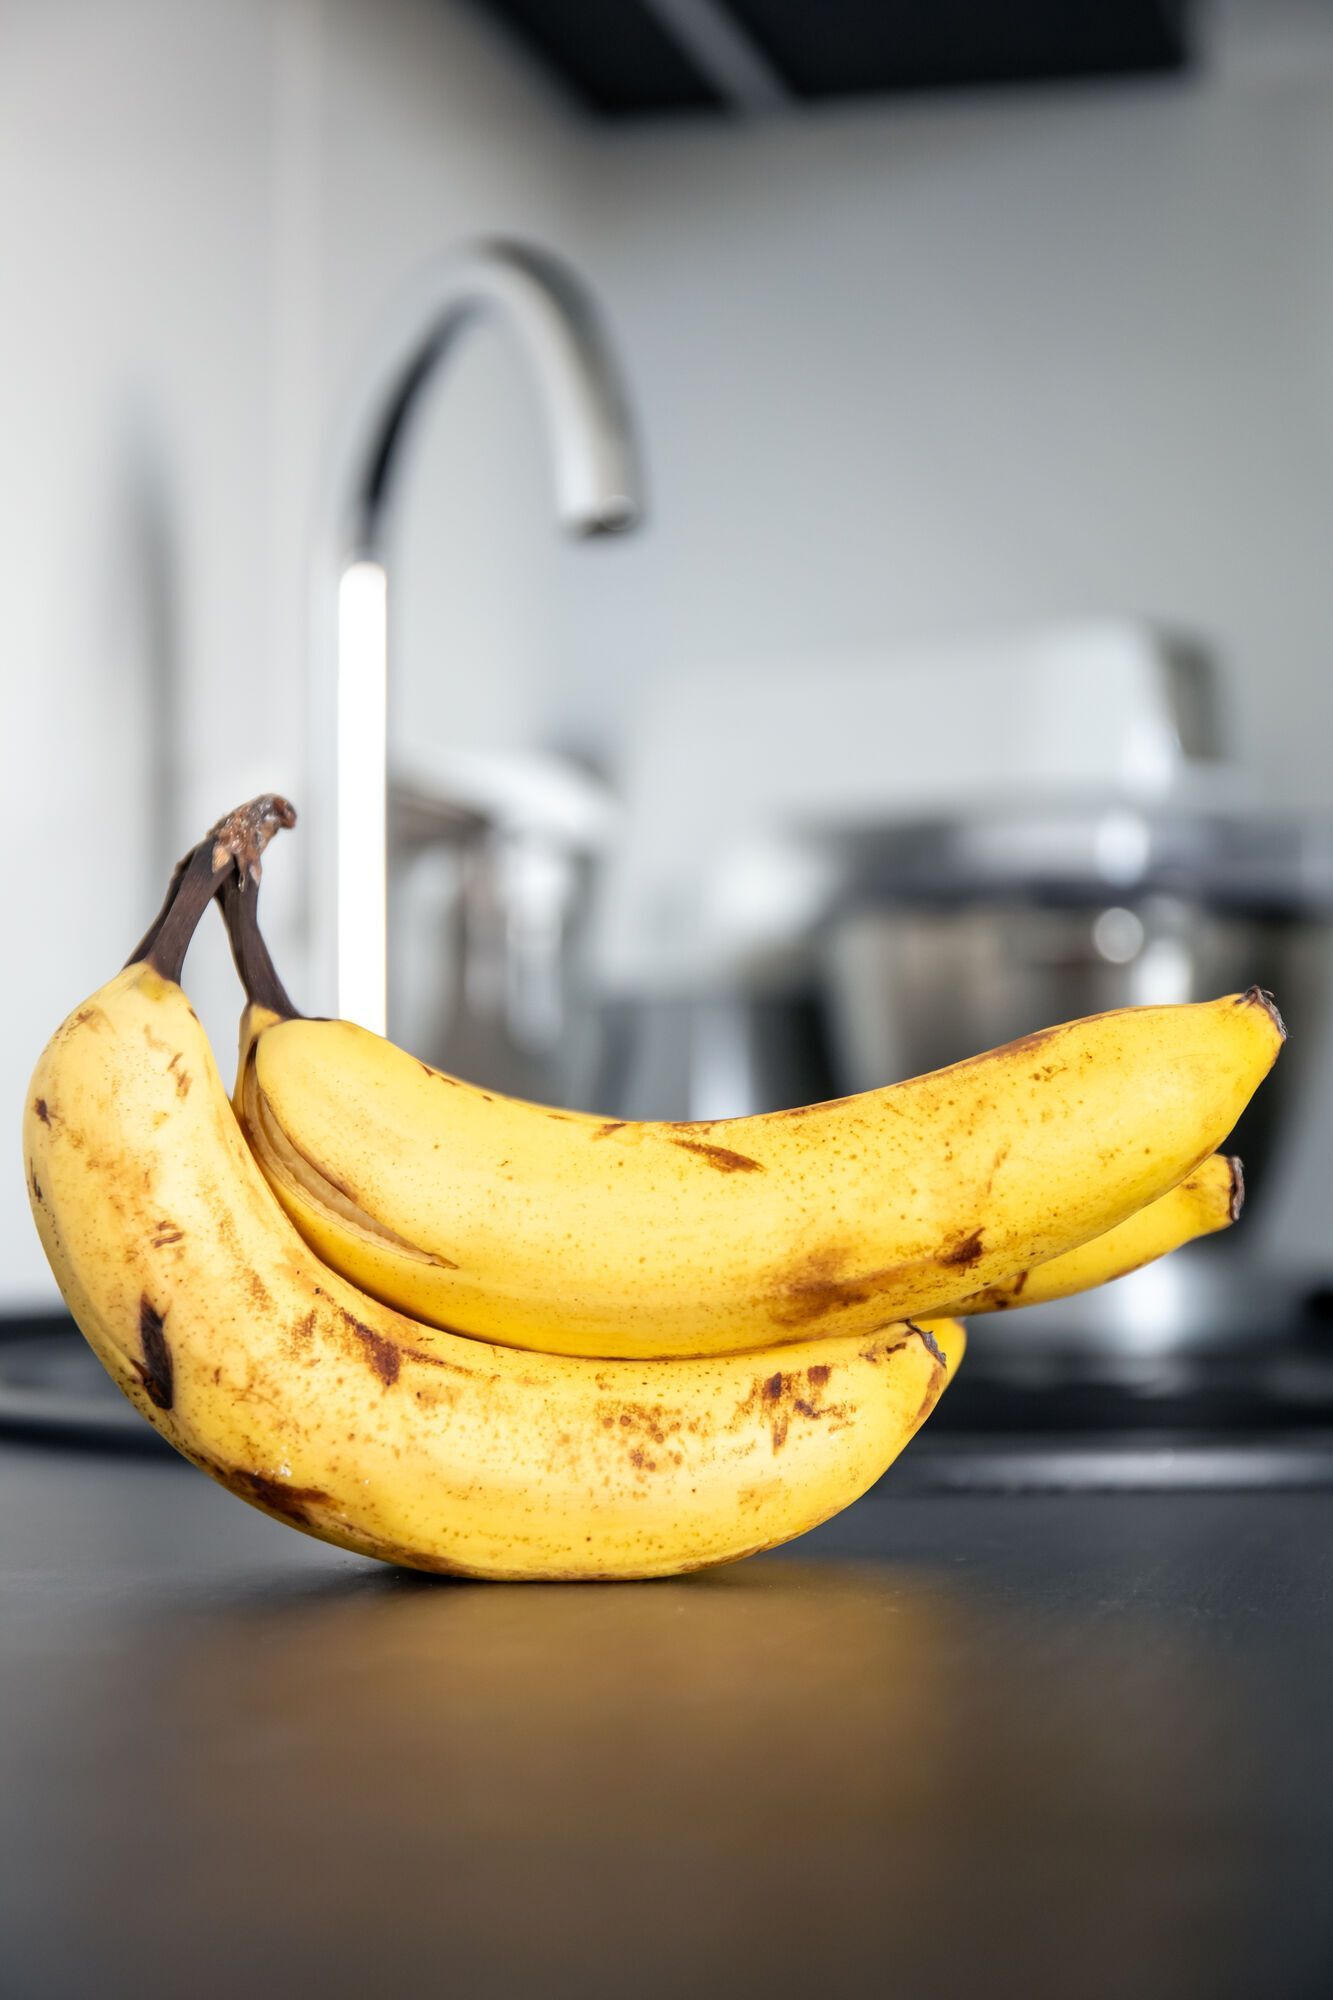 Как сохранить бананы желтыми и без темных пятен в течение 26 дней: действенный лайфхак